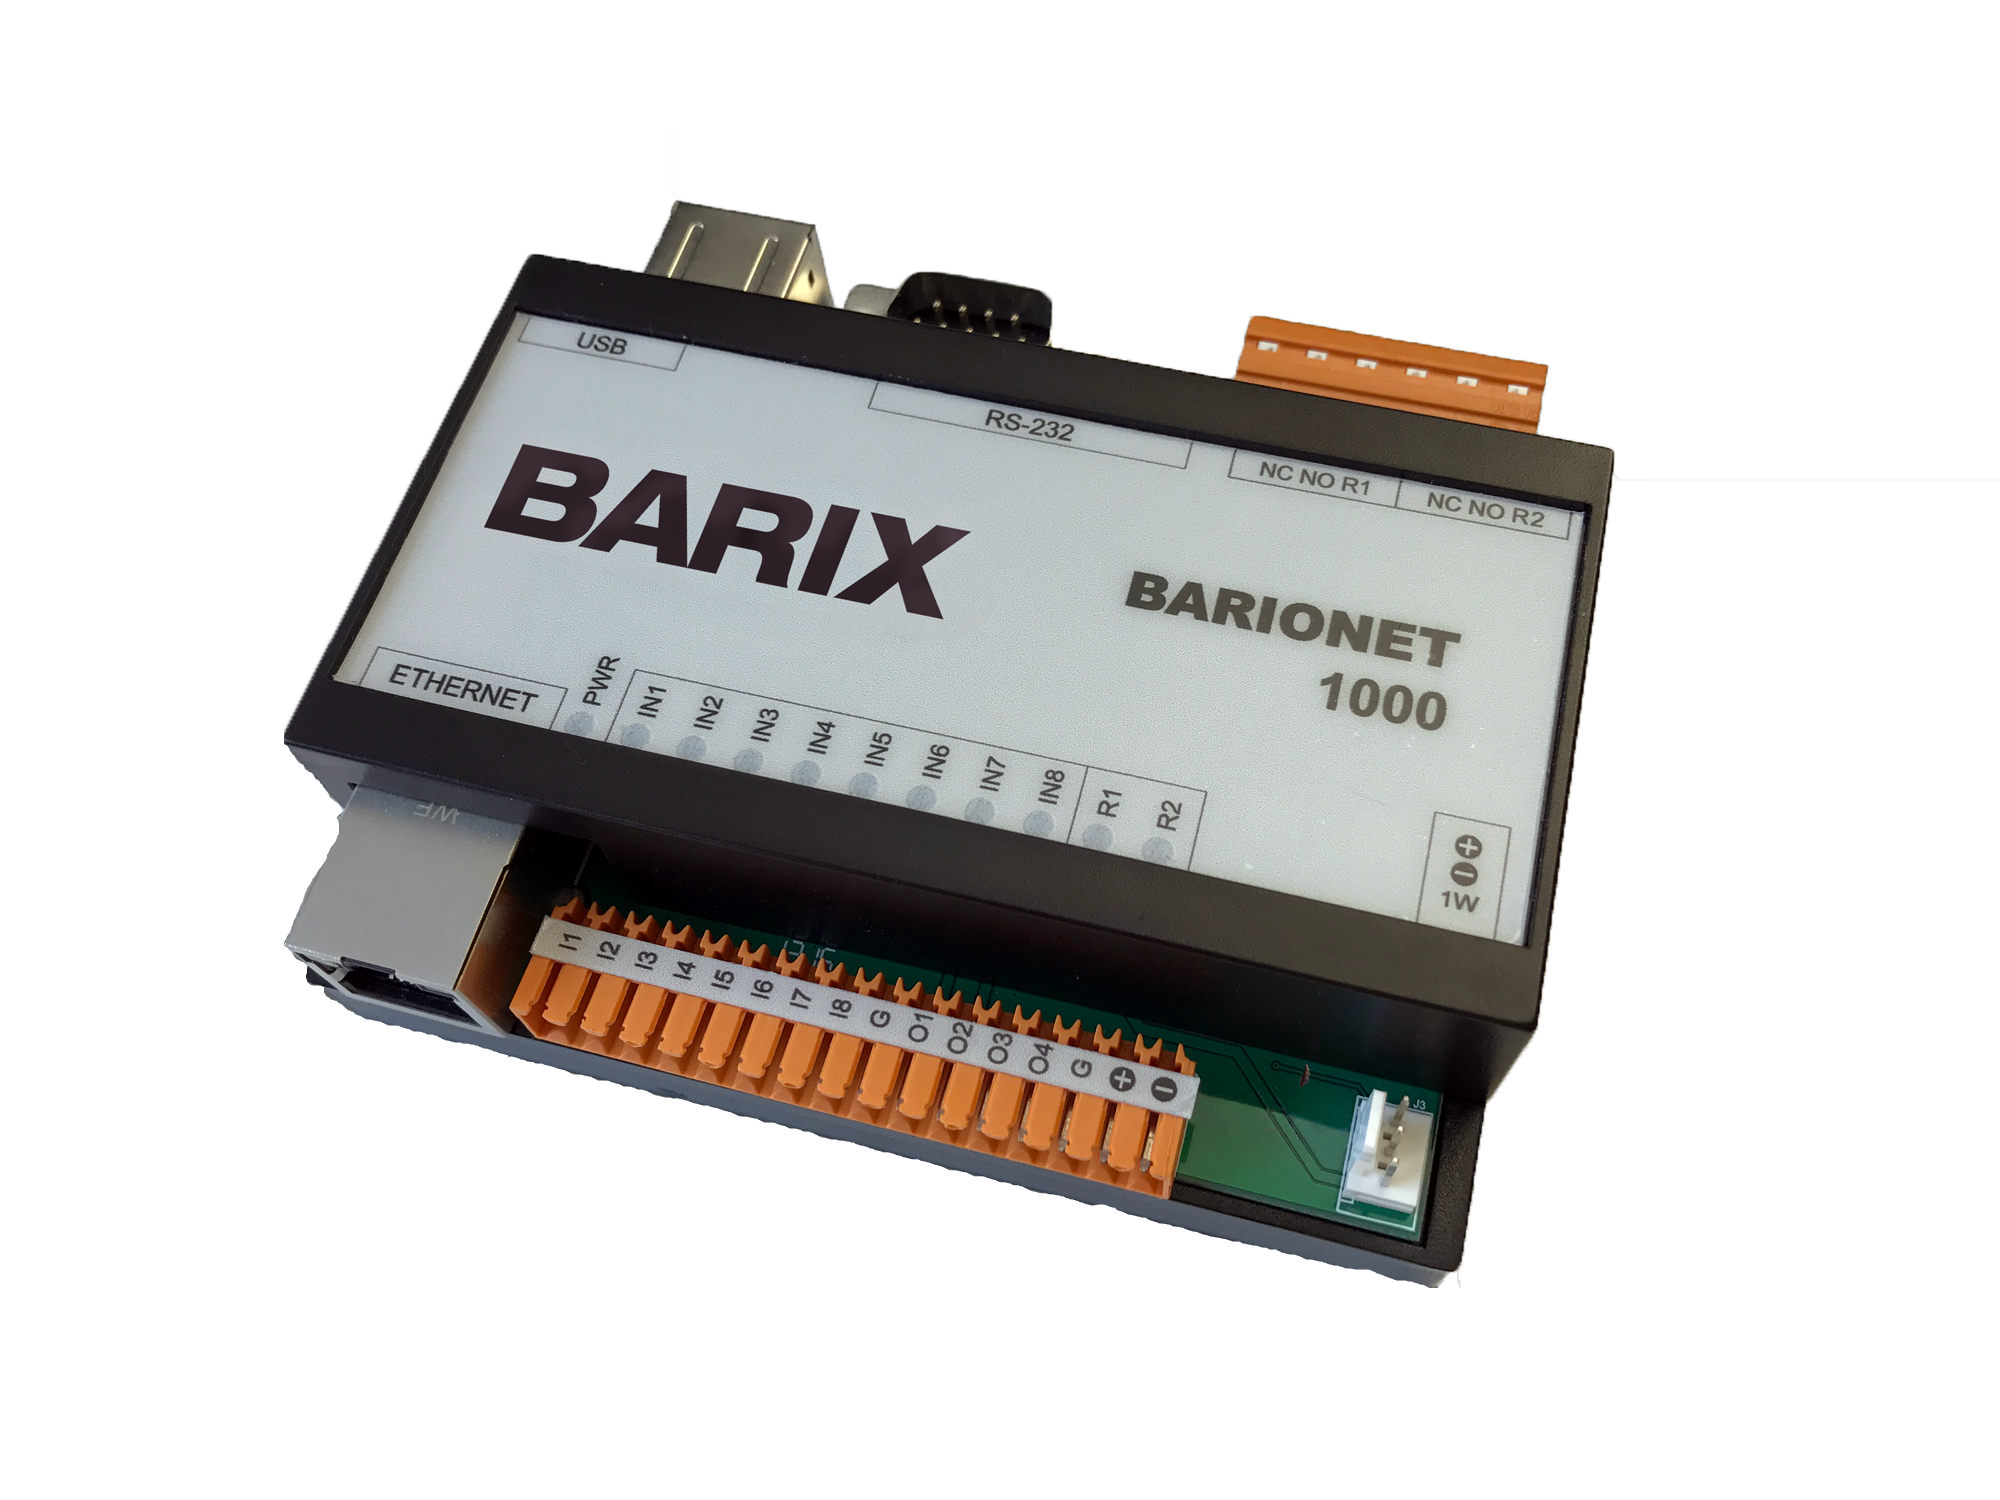 Barix Barionet 1000